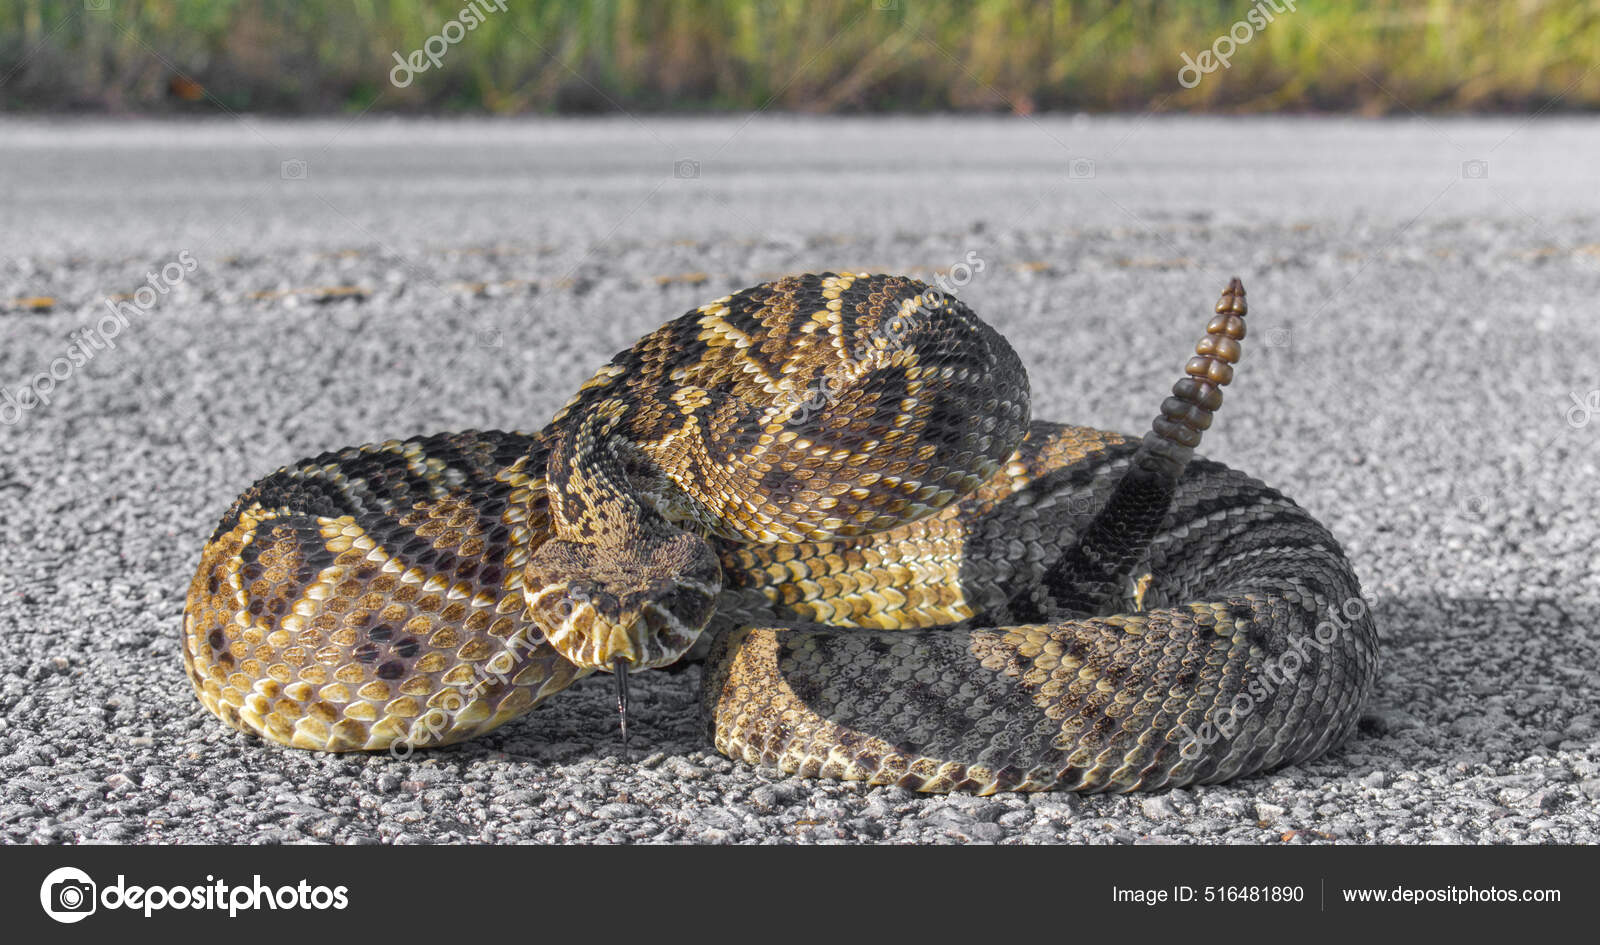 rattlesnake strike pose